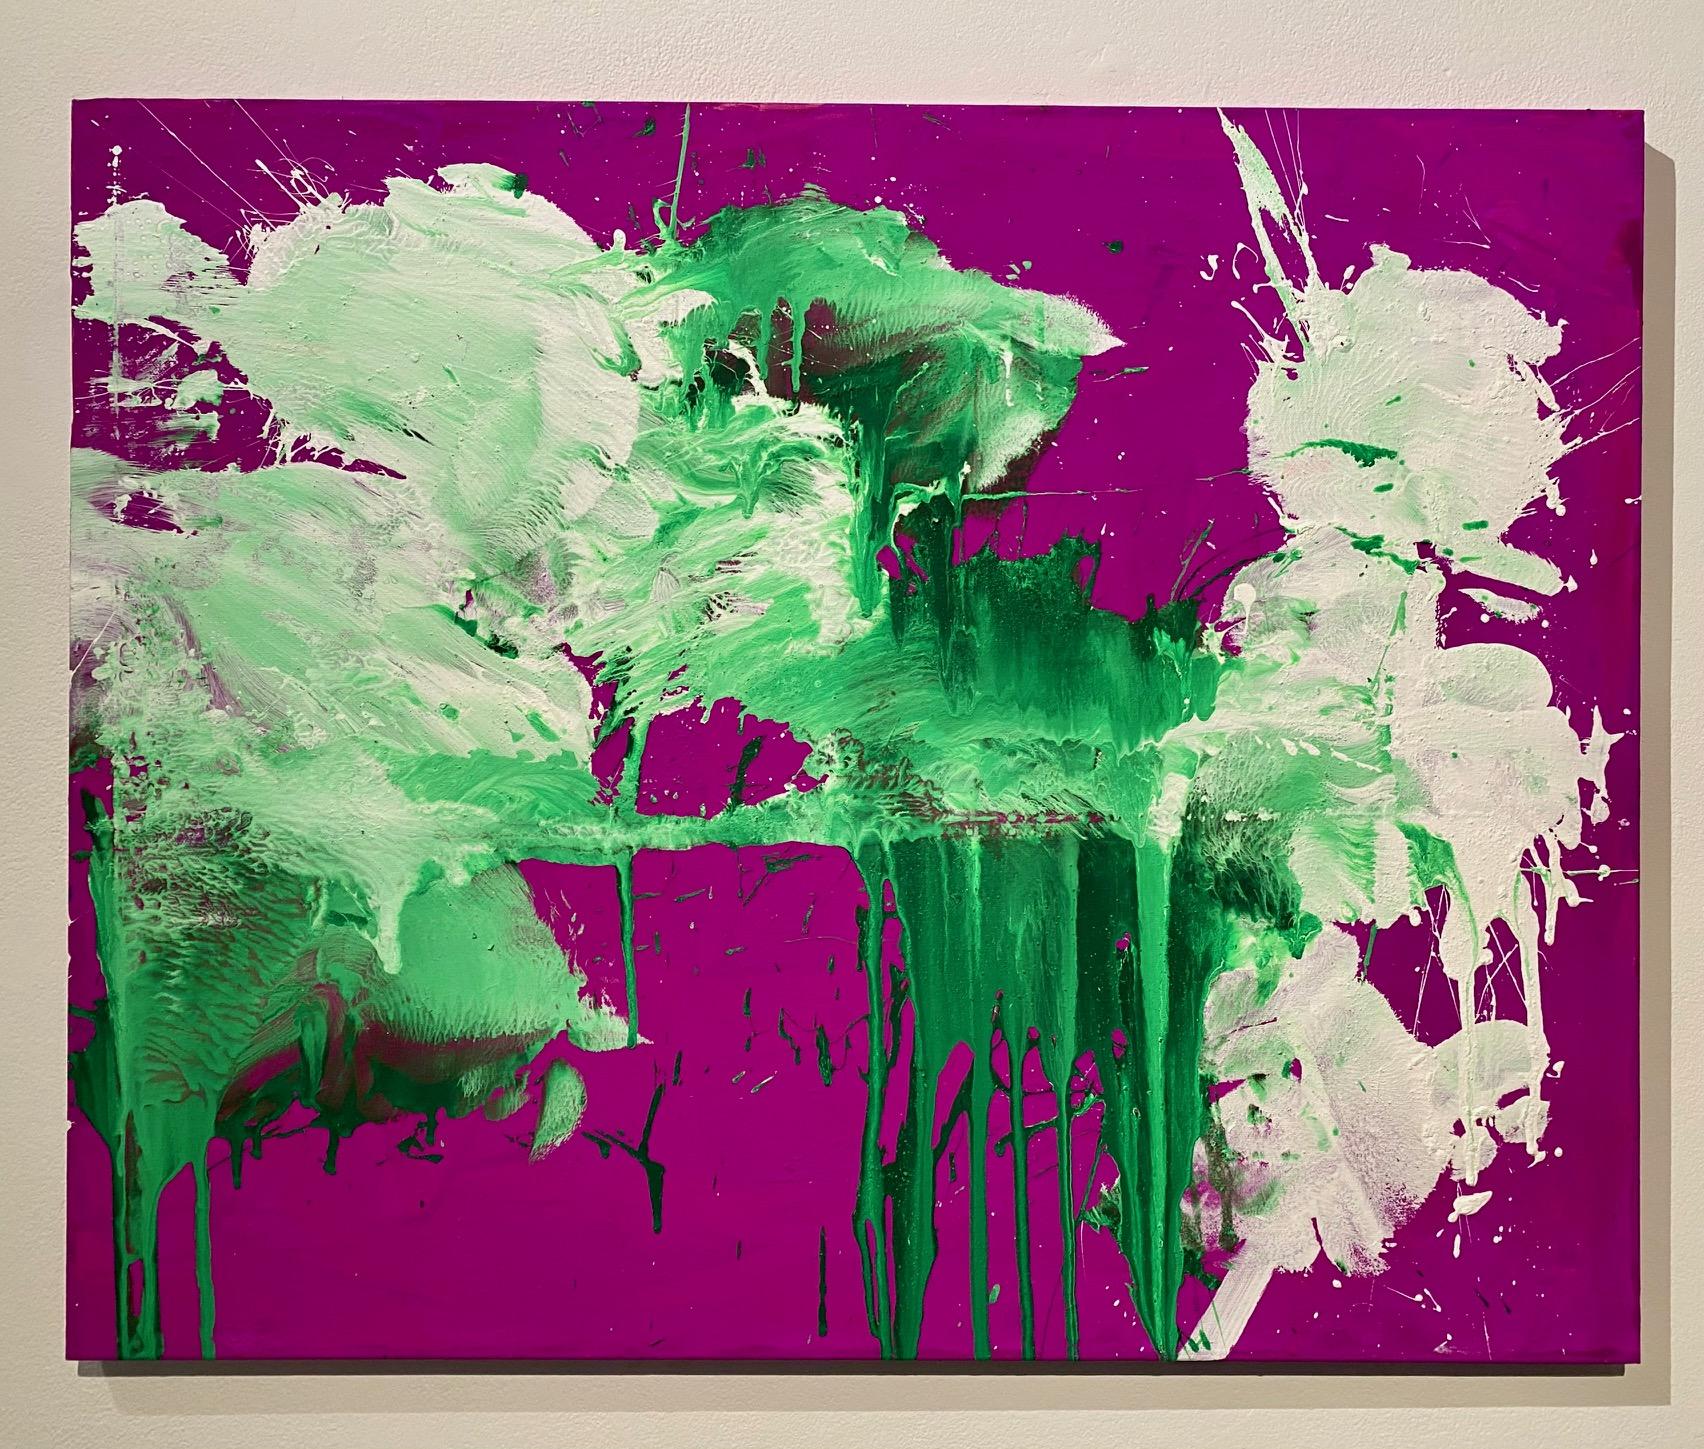 Abstract Painting Ushio Shinohara - blanc et vert sur violet  « A », acrylique sur toile - peinture abstraite de boxe